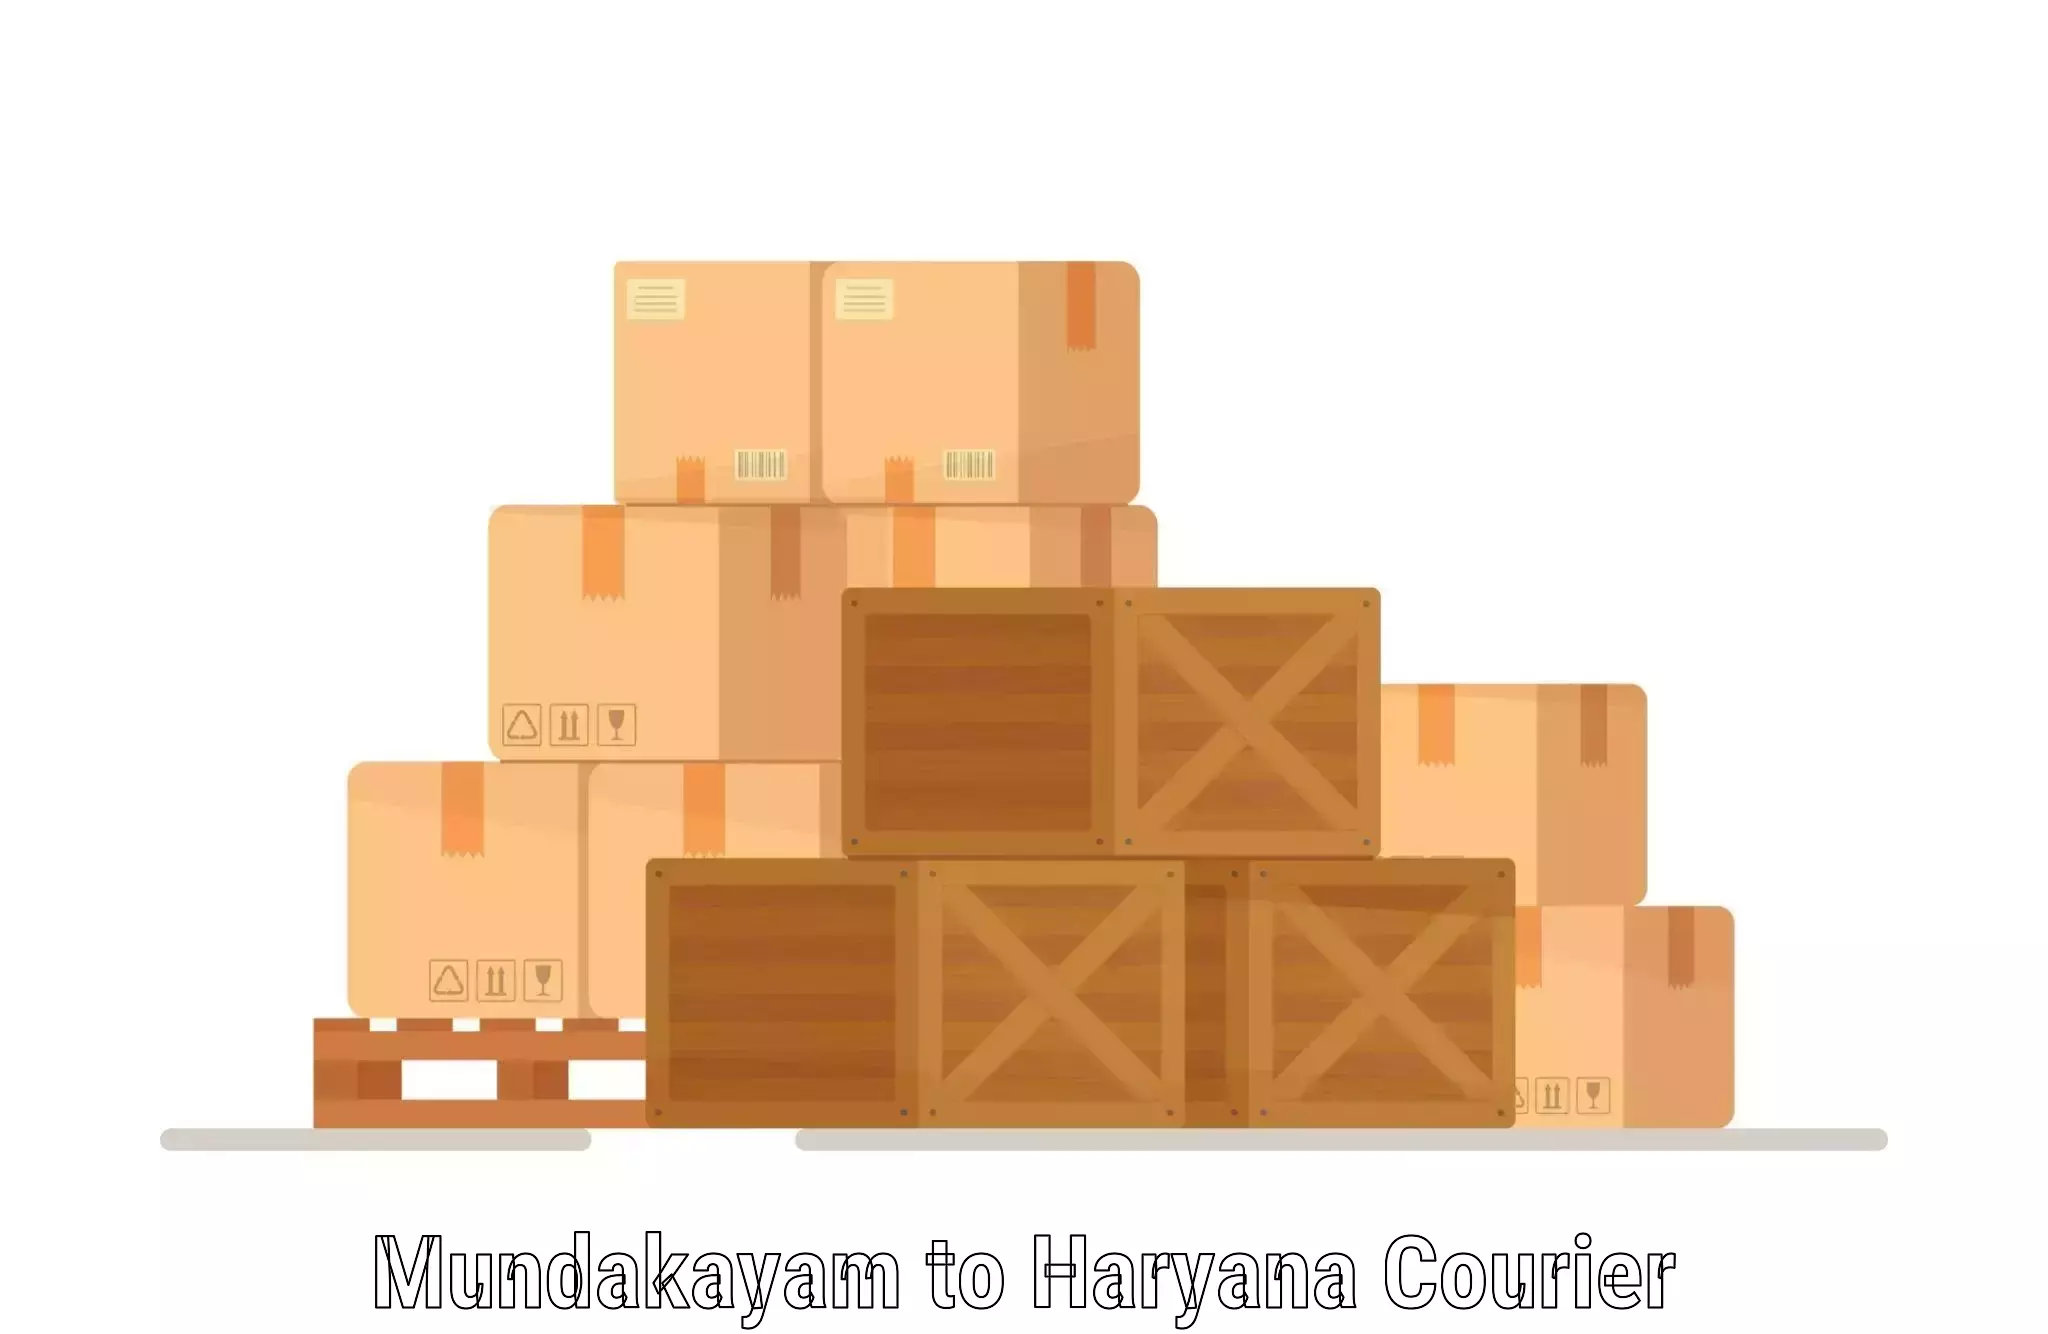 Multi-package shipping Mundakayam to IIIT Sonepat